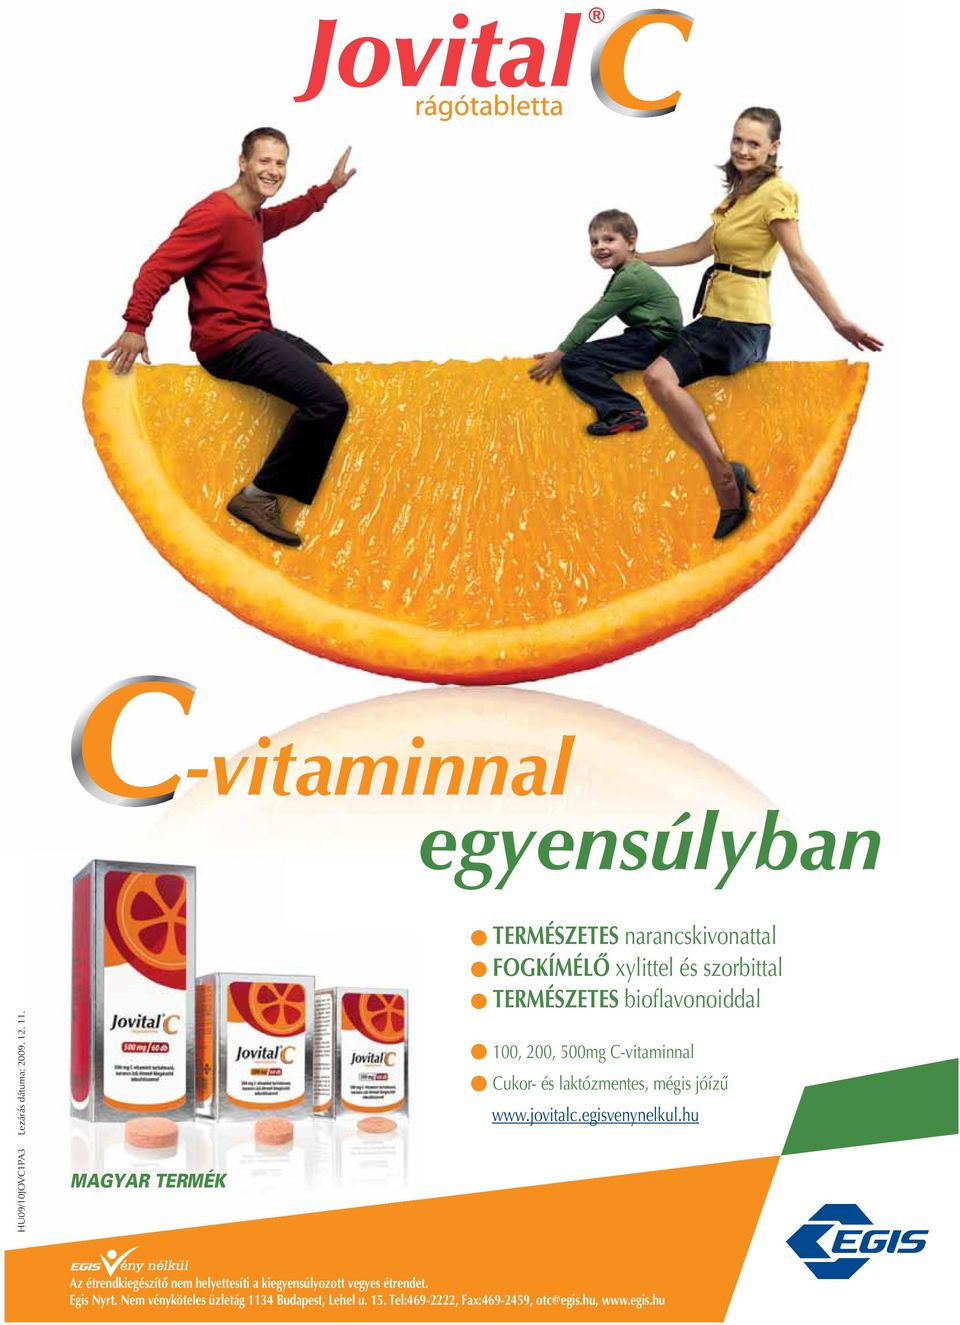 500mg C-vitaminnal Cukor- és laktózmentes, mégis jóízû www.jovitalc.egisvenynelkul.